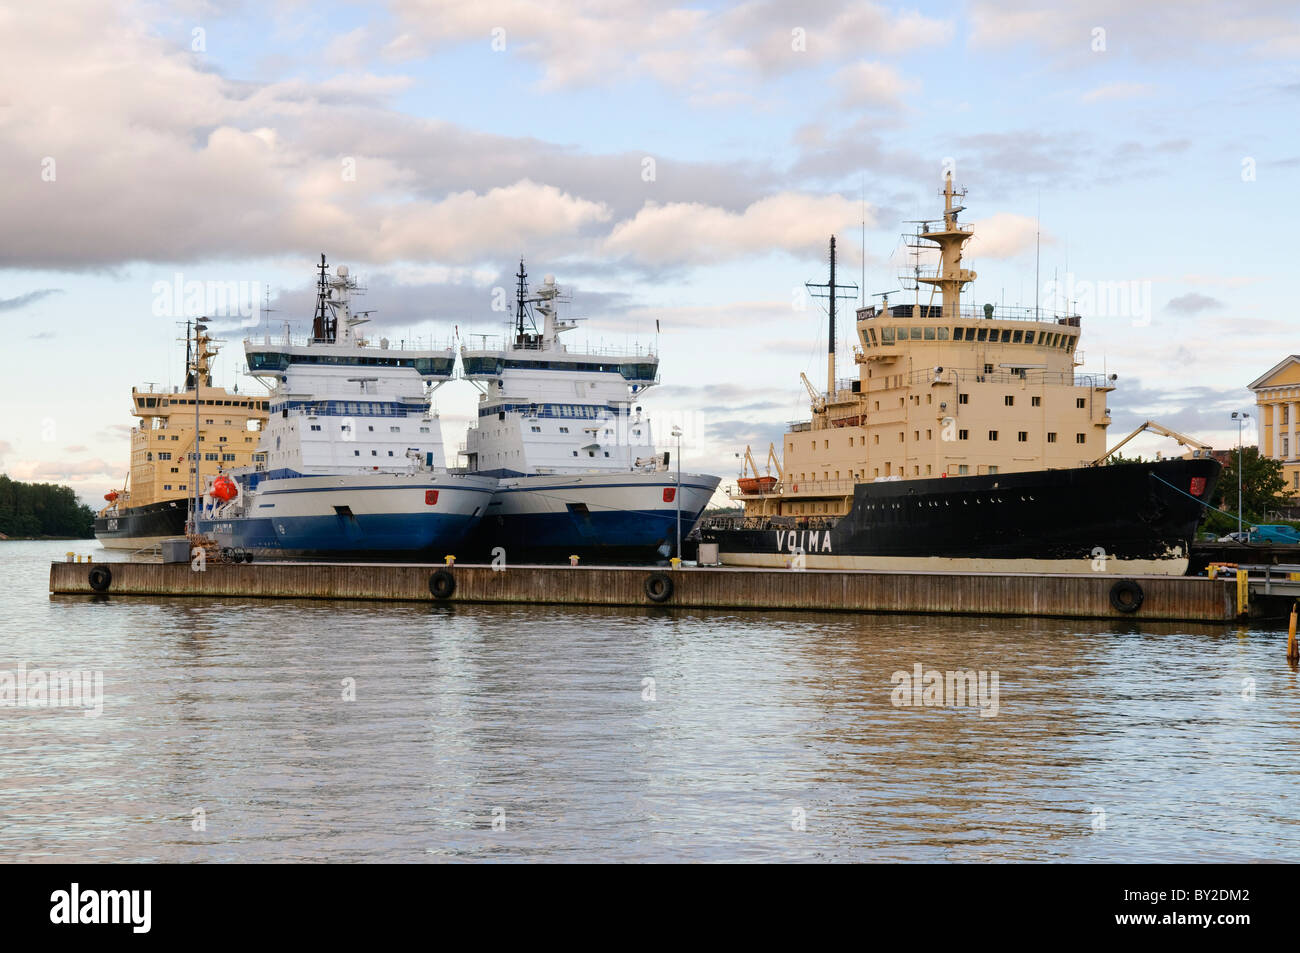 Romper el hielo buques en Helsinki, Finlandia. Estos se utilizan para romper el hielo en el puerto de Helsinki y el Mar Báltico durante el invierno. Foto de stock